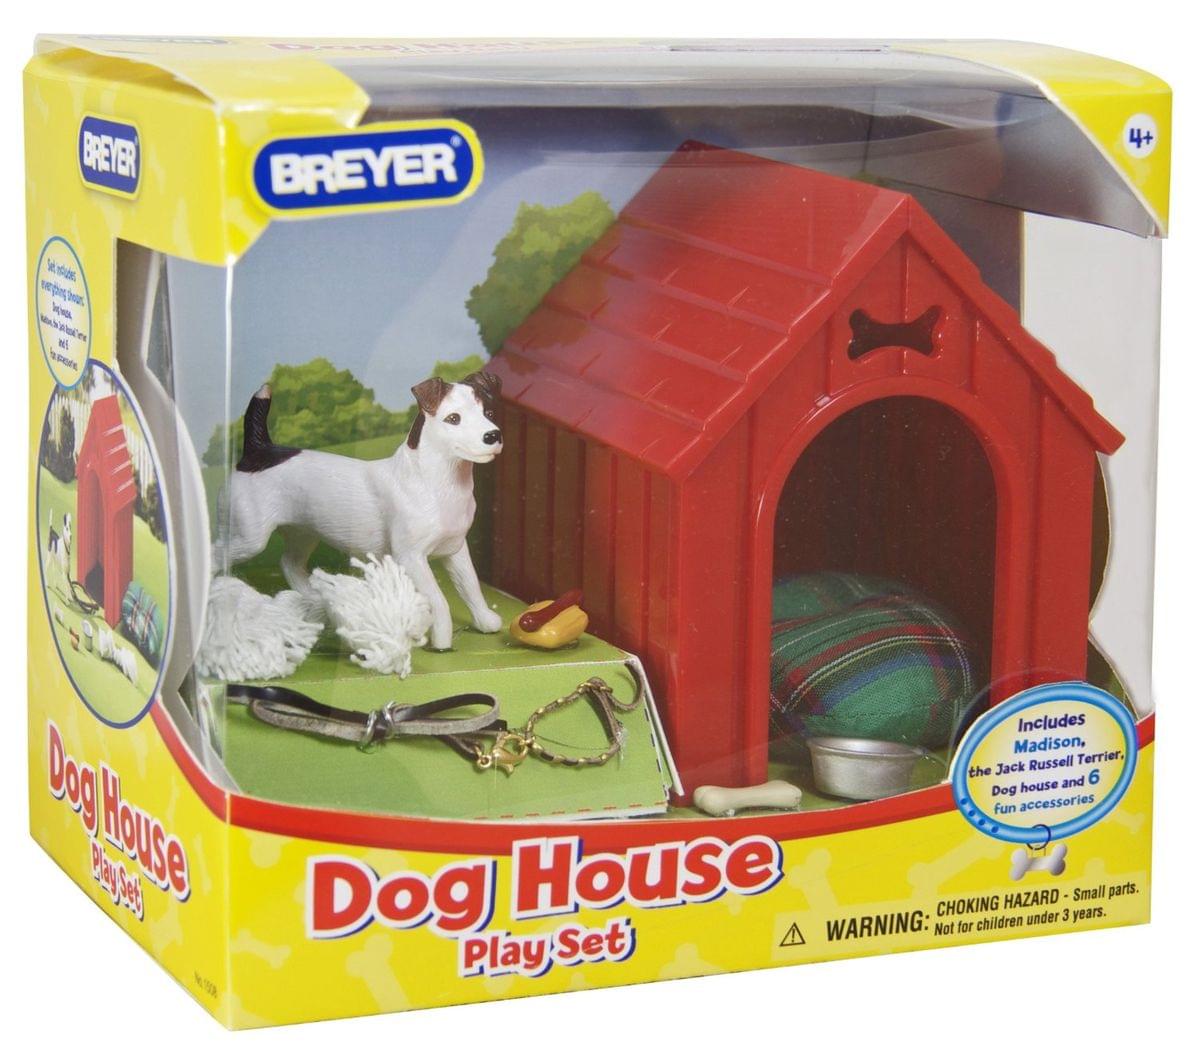 Breyer Dog House Play Set